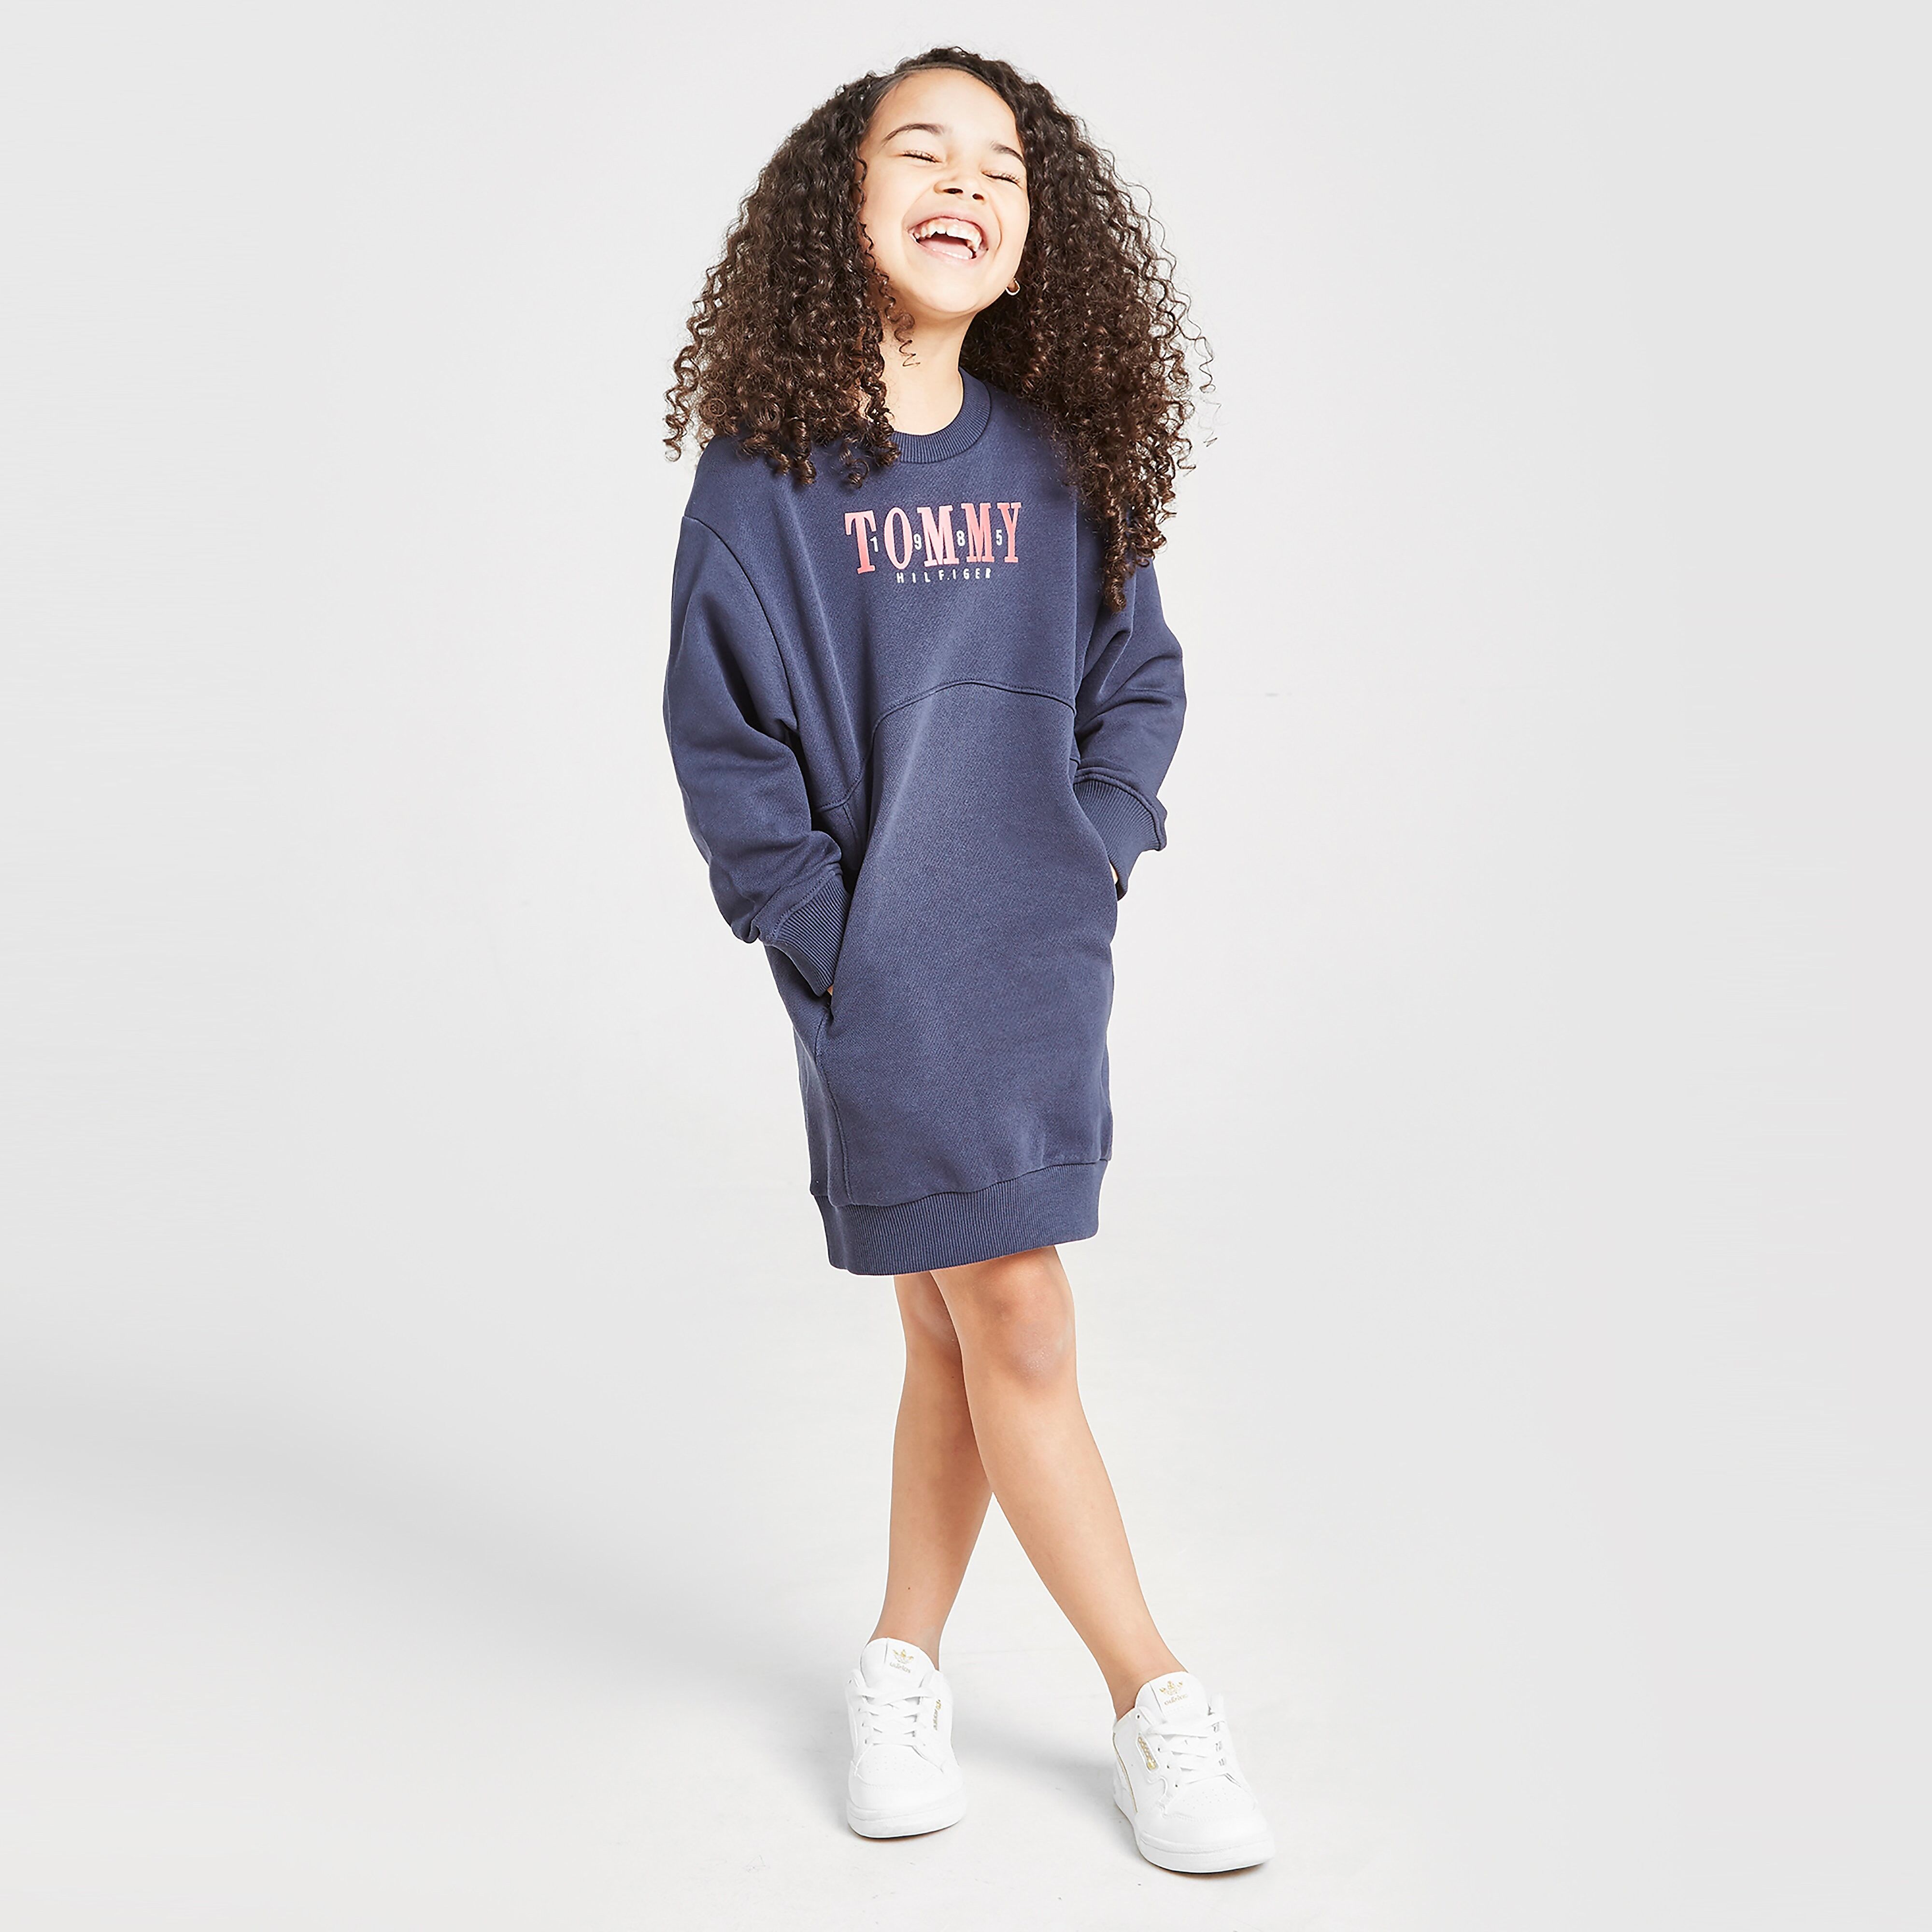 Tommy Hilfiger Girls' Logo Crew Sweatshirt Dress Children - Navy - Kids  size: 5Y